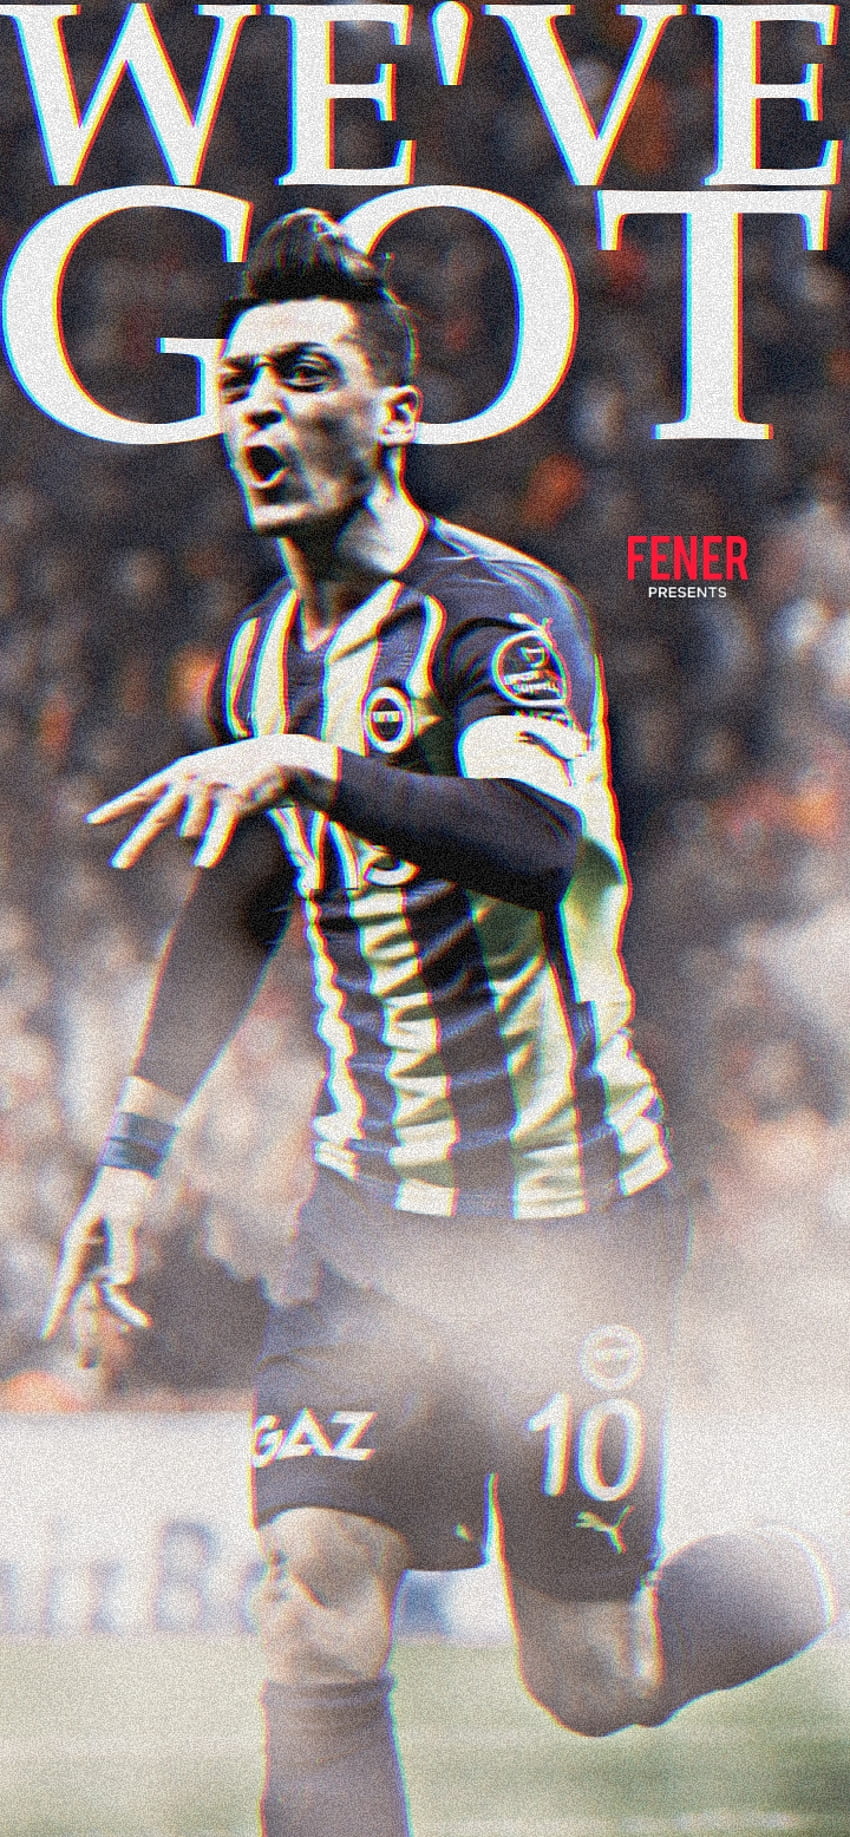 Fenerbahçe, Mesut Özil, Mesut Özil, Fenerbahce, Fenerbahçe, Galatasaray HD phone wallpaper